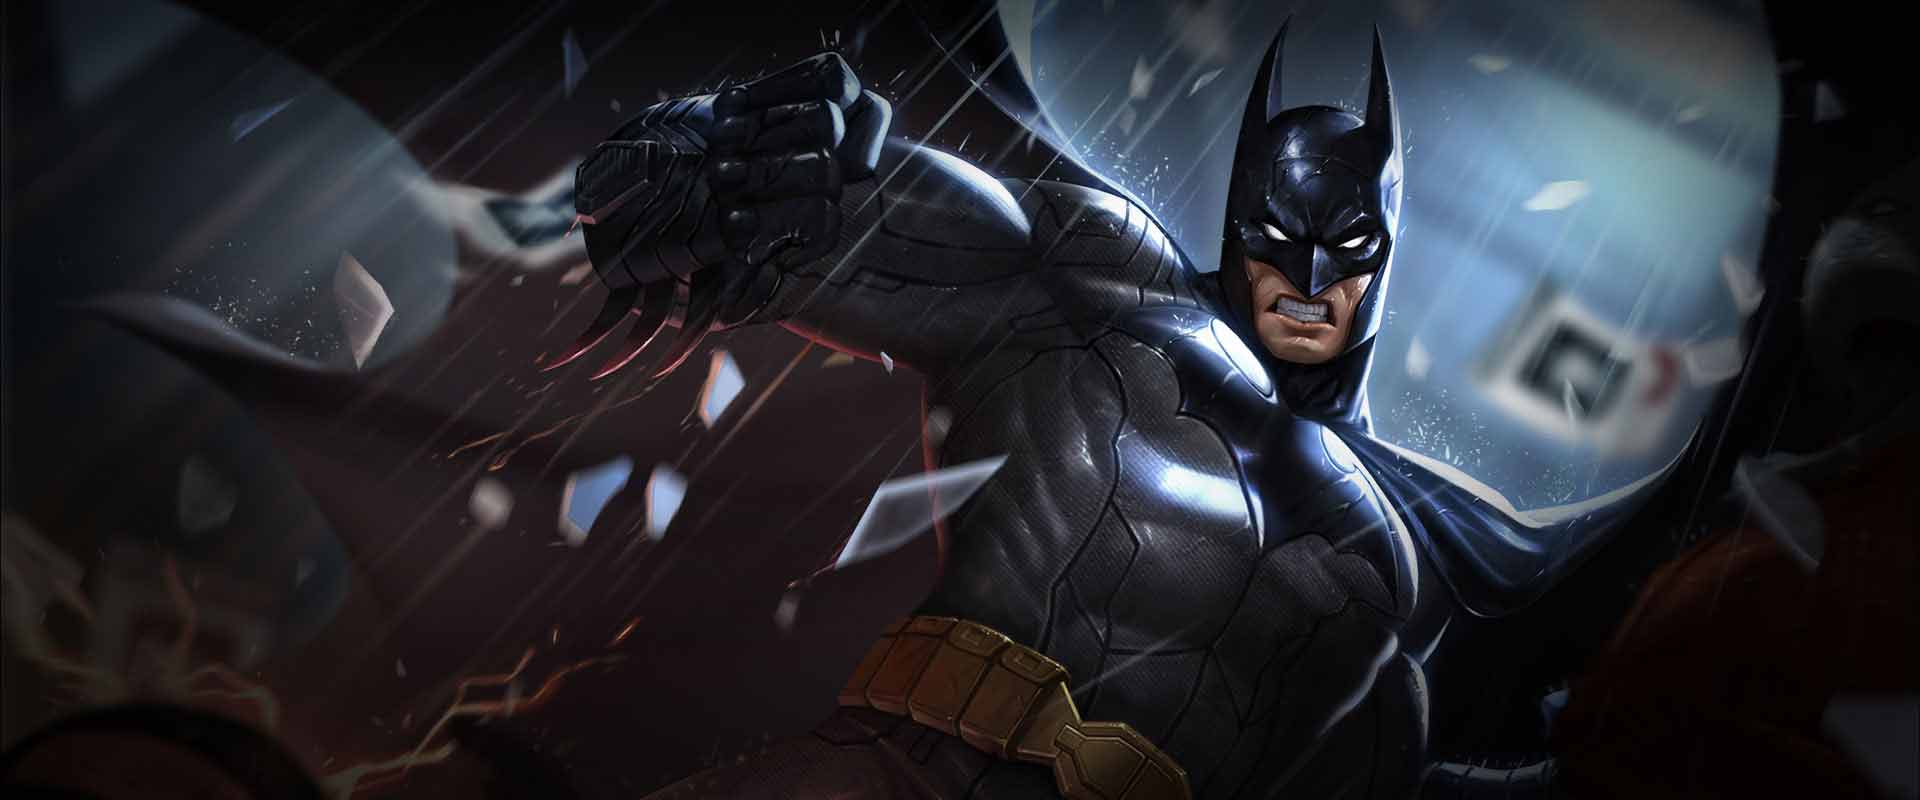 Batman: Tận hưởng hành động và phiêu lưu với Batman. Hình ảnh của Người Dơi sẵn sàng để đưa bạn vào thế giới của anh ta và đưa ra một loạt các cuộc phiêu lưu mới. Hãy sẵn sàng với bật lên đèn pin và trở thành một người hùng của riêng bạn!